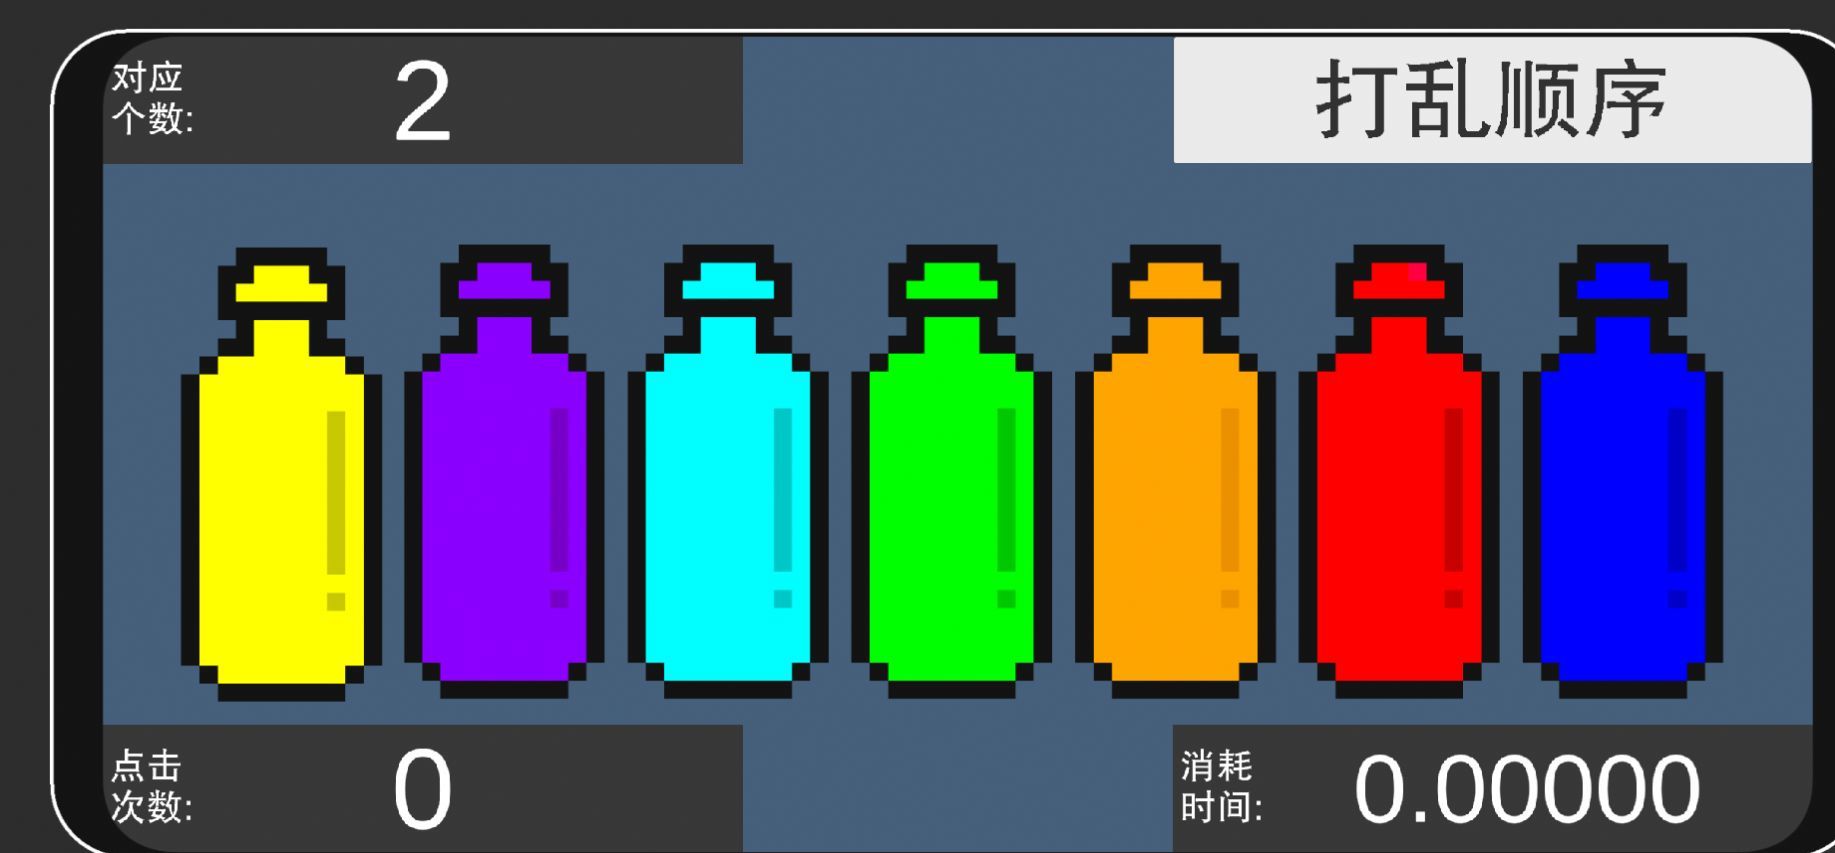 彩虹瓶子游戏